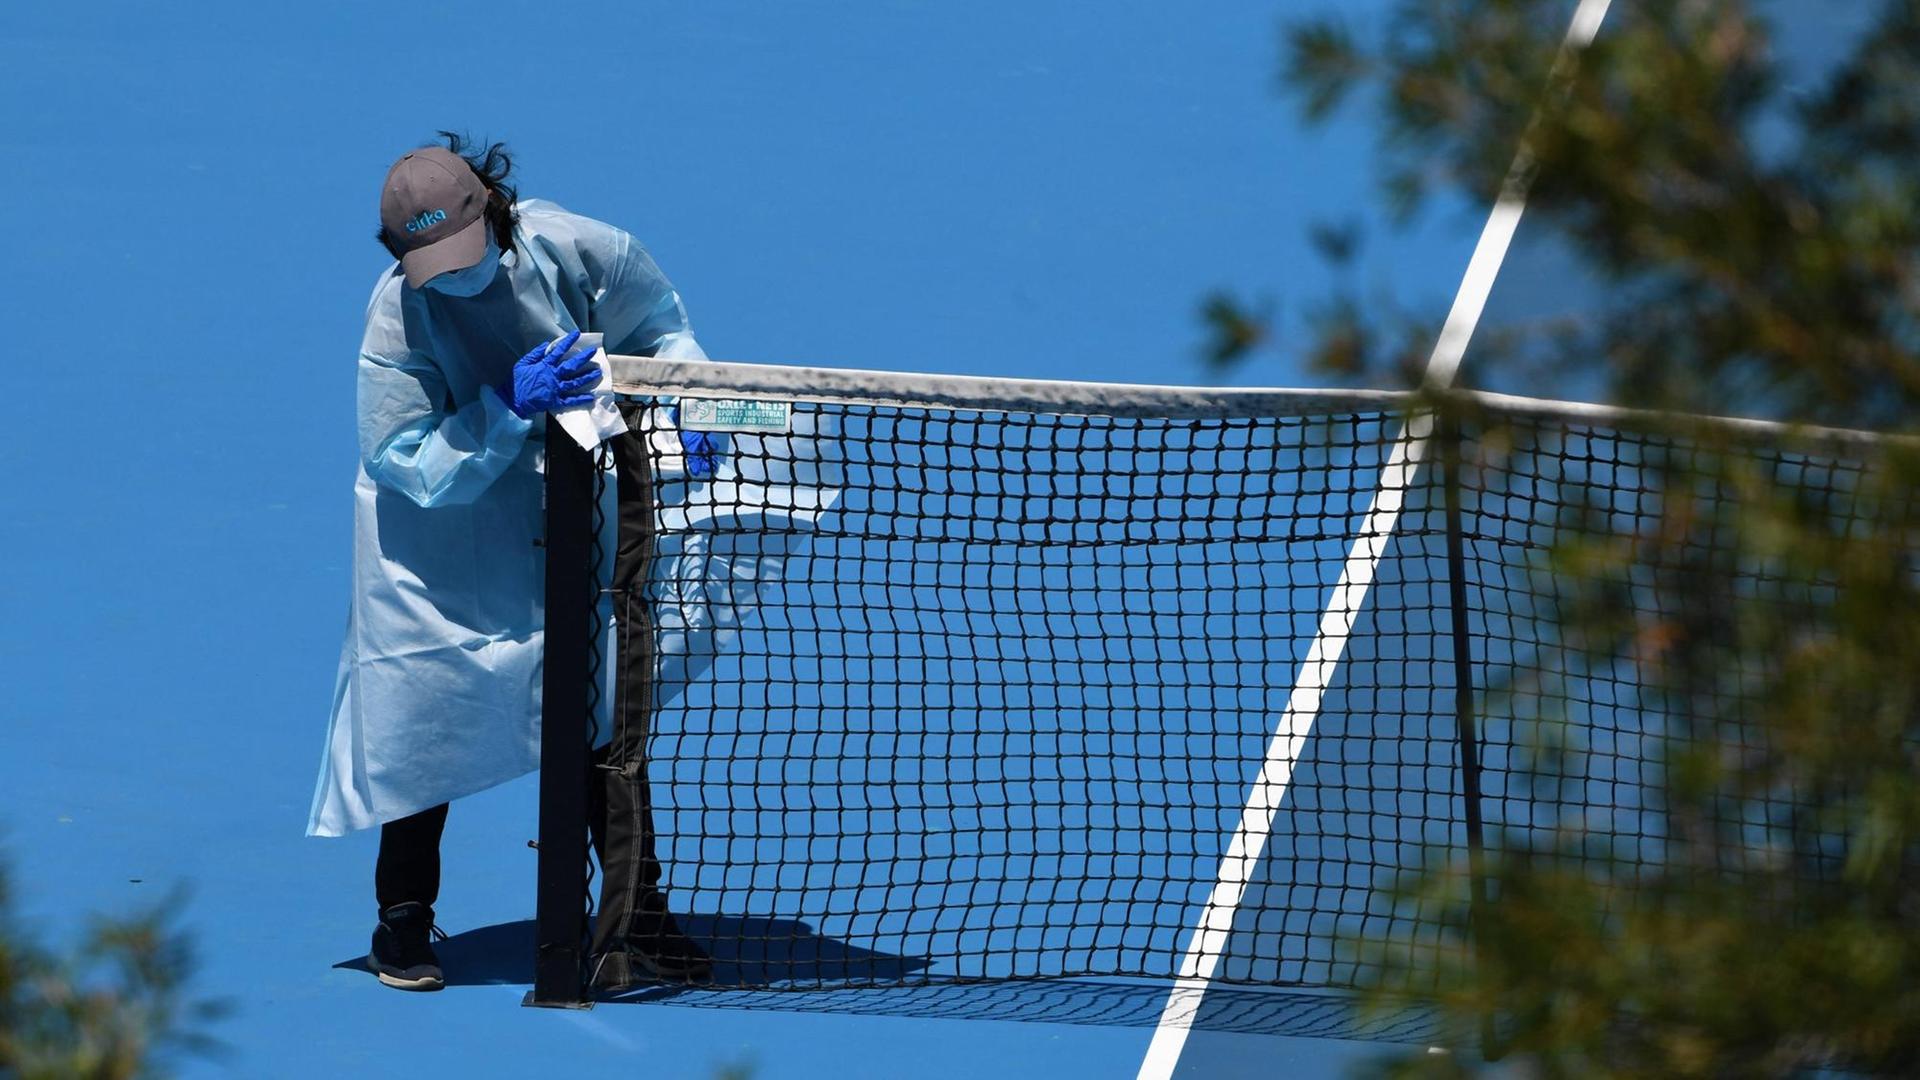 Nach einer Trainingssession für die Australian Open 2021wird ein Tennisplatz desinfiziert.